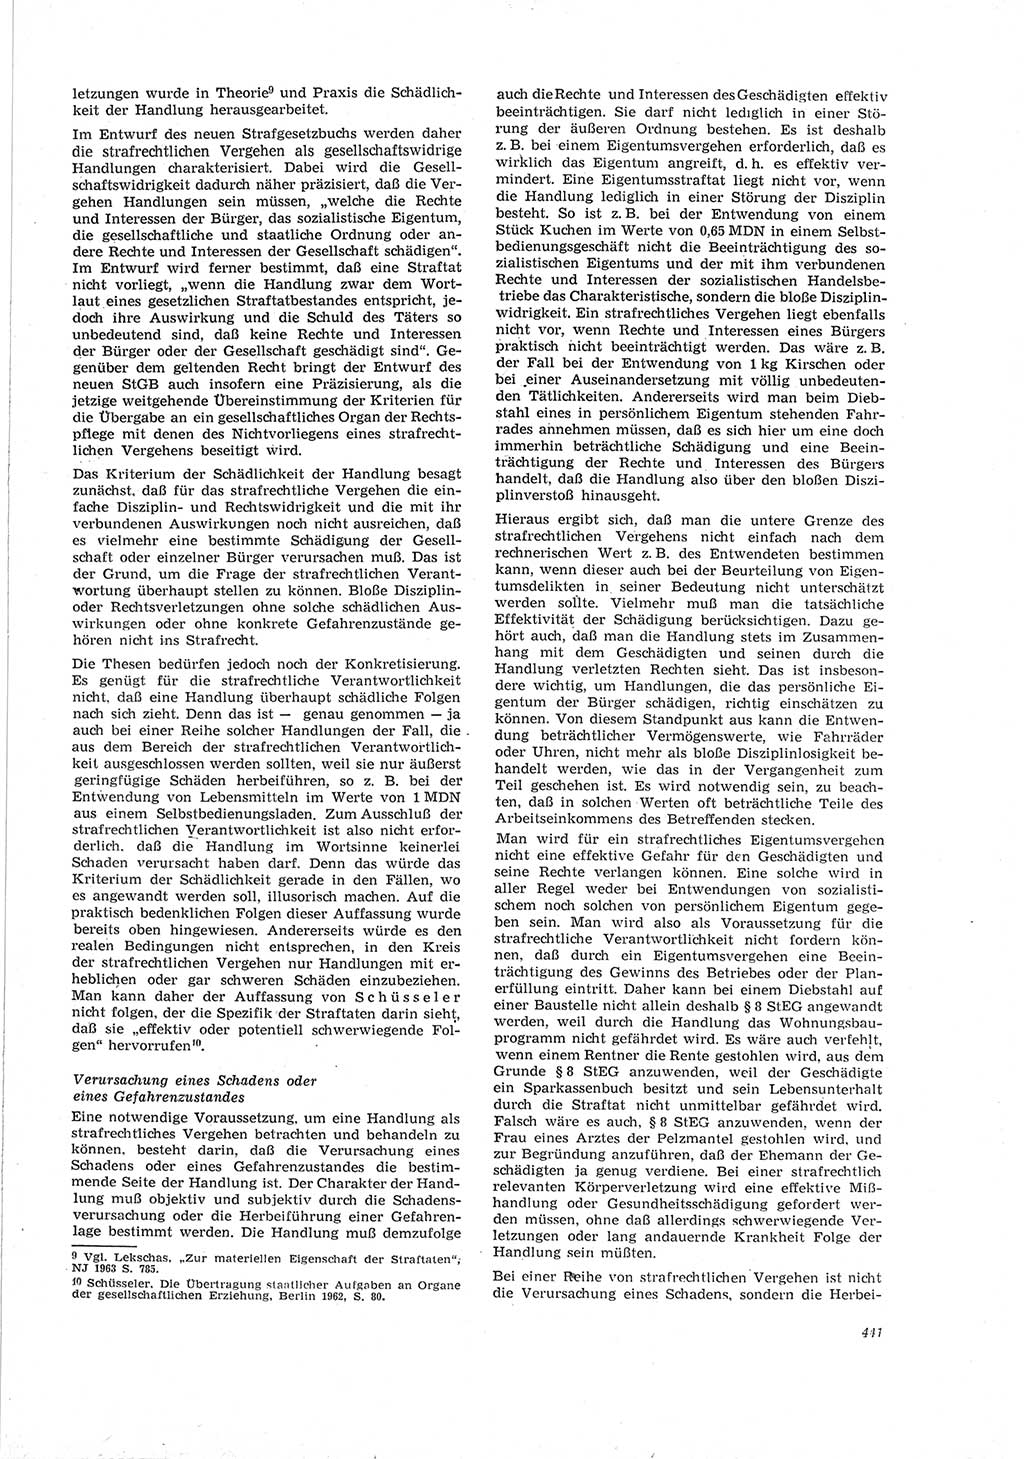 Neue Justiz (NJ), Zeitschrift für Recht und Rechtswissenschaft [Deutsche Demokratische Republik (DDR)], 19. Jahrgang 1965, Seite 441 (NJ DDR 1965, S. 441)